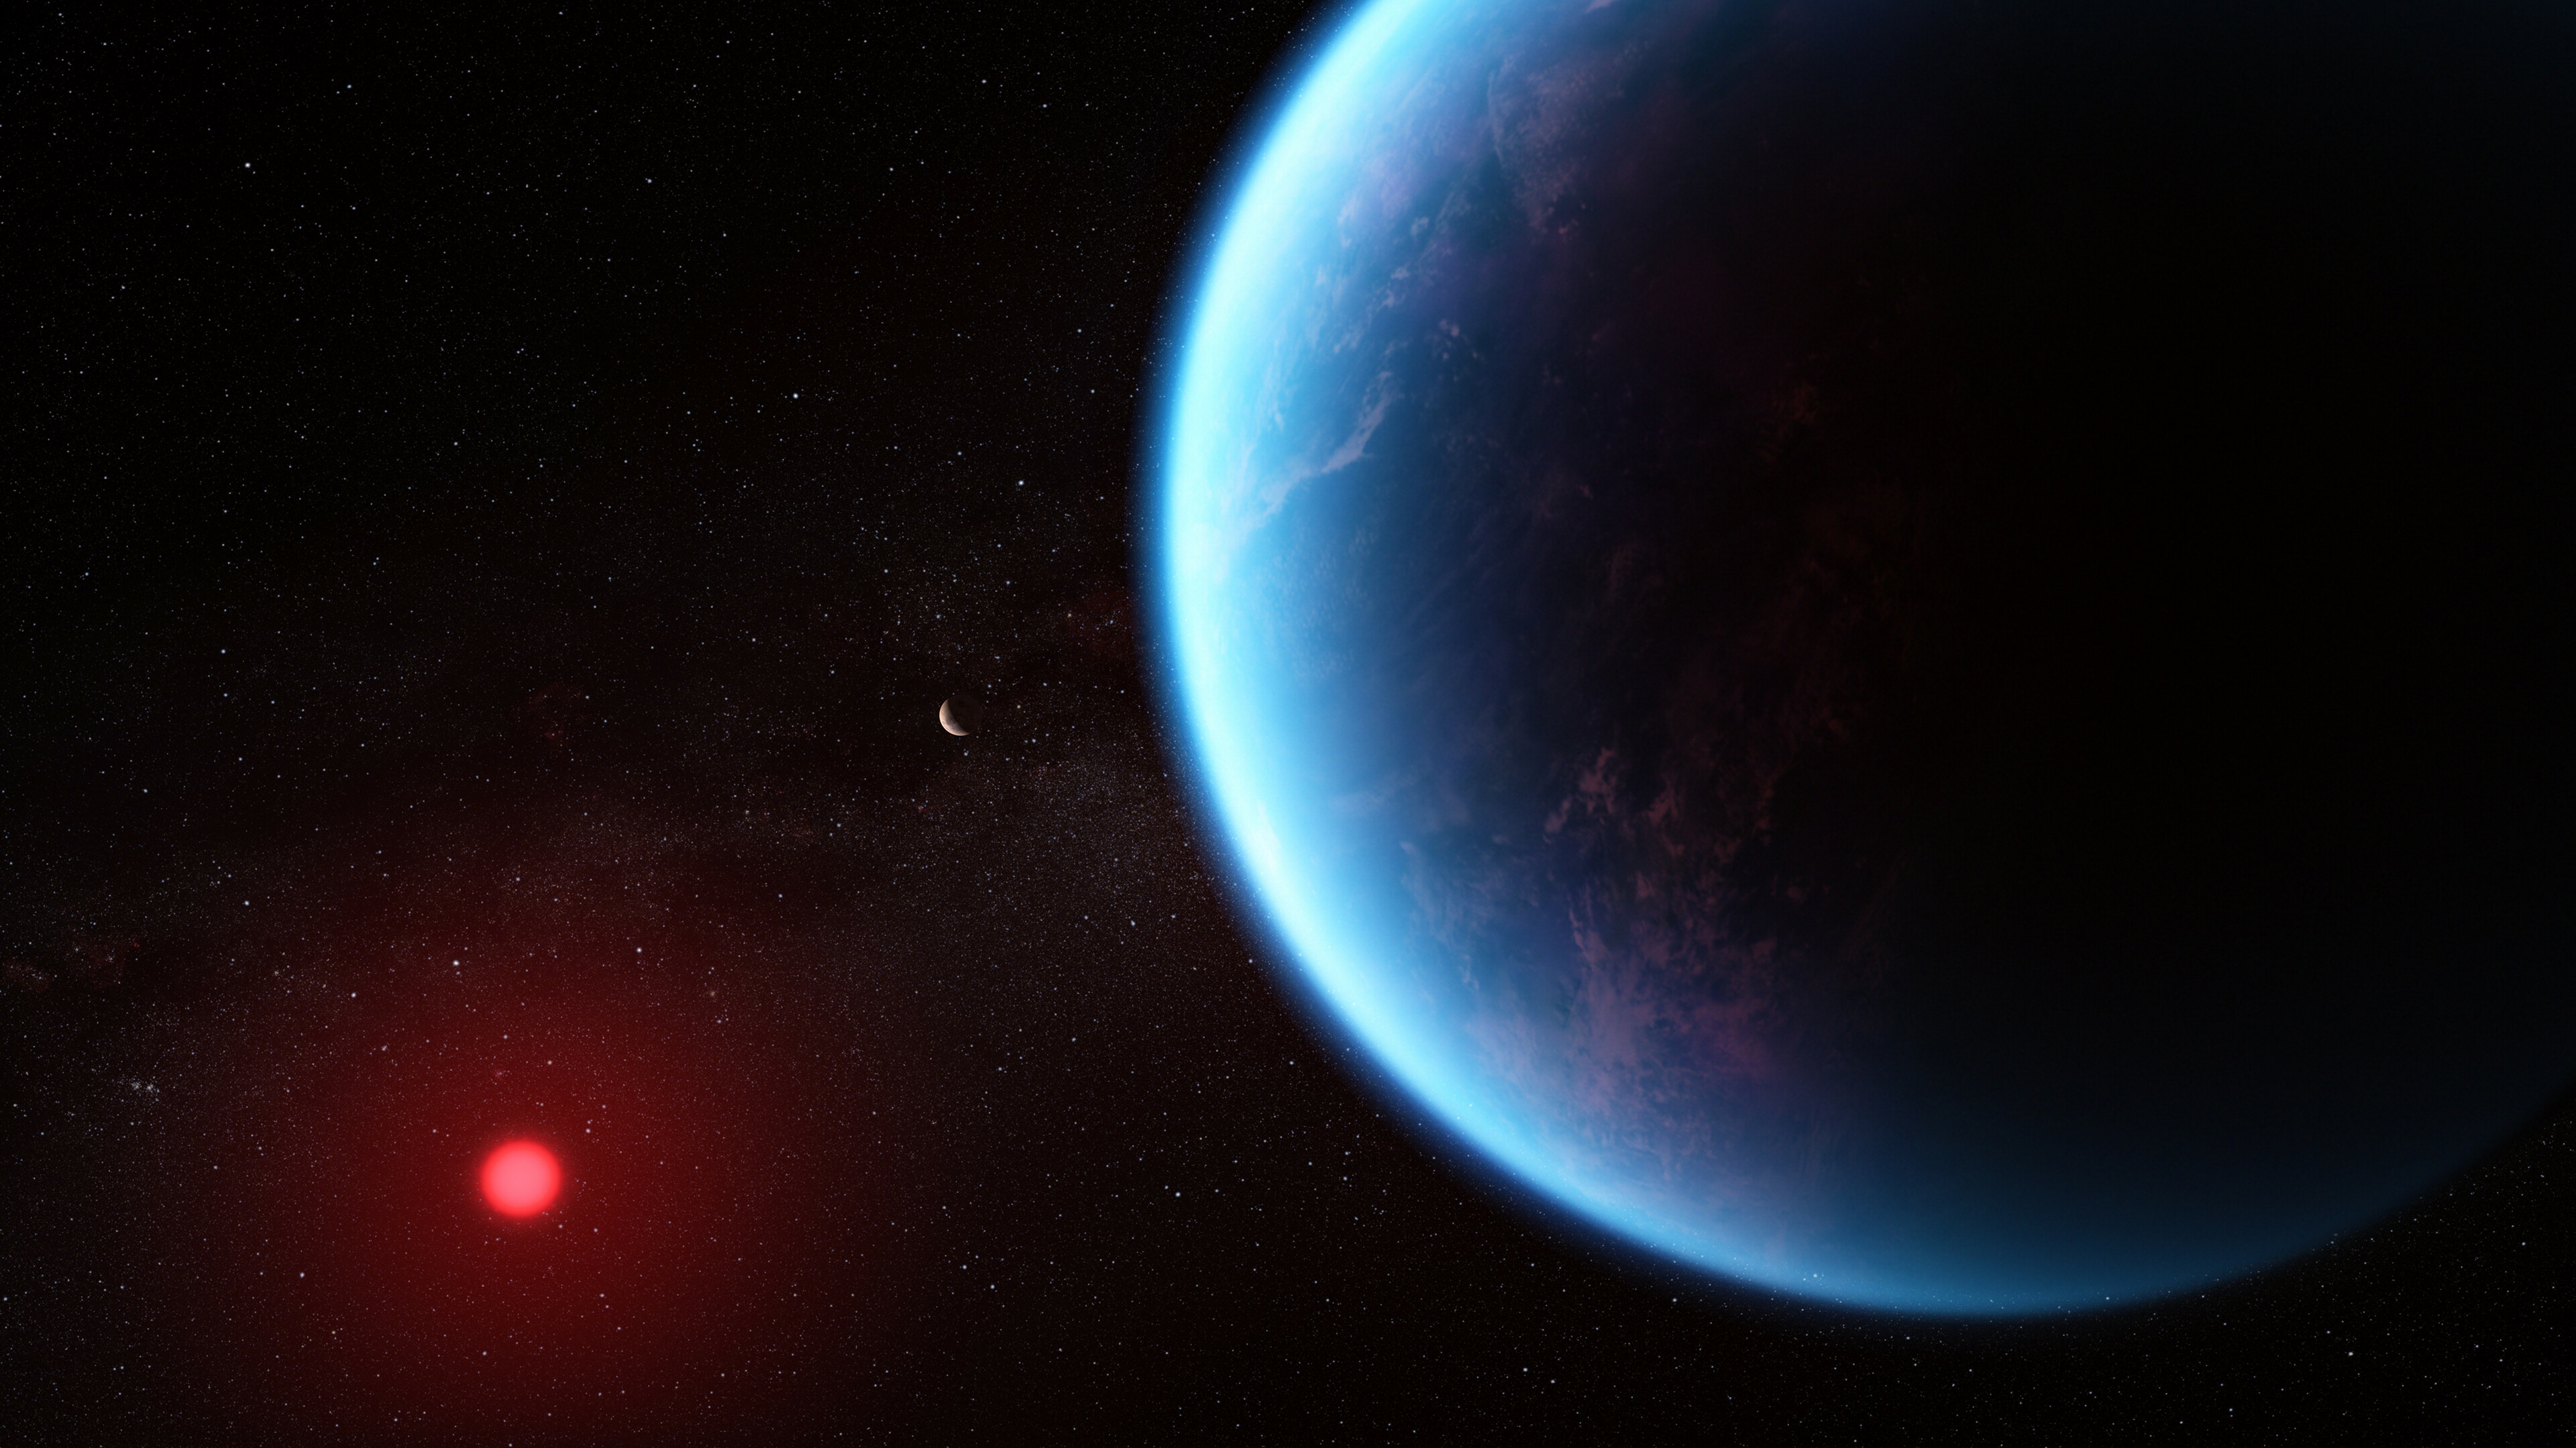 astronomie: wohl keine mögliche spur von außerirdischem leben entdeckt